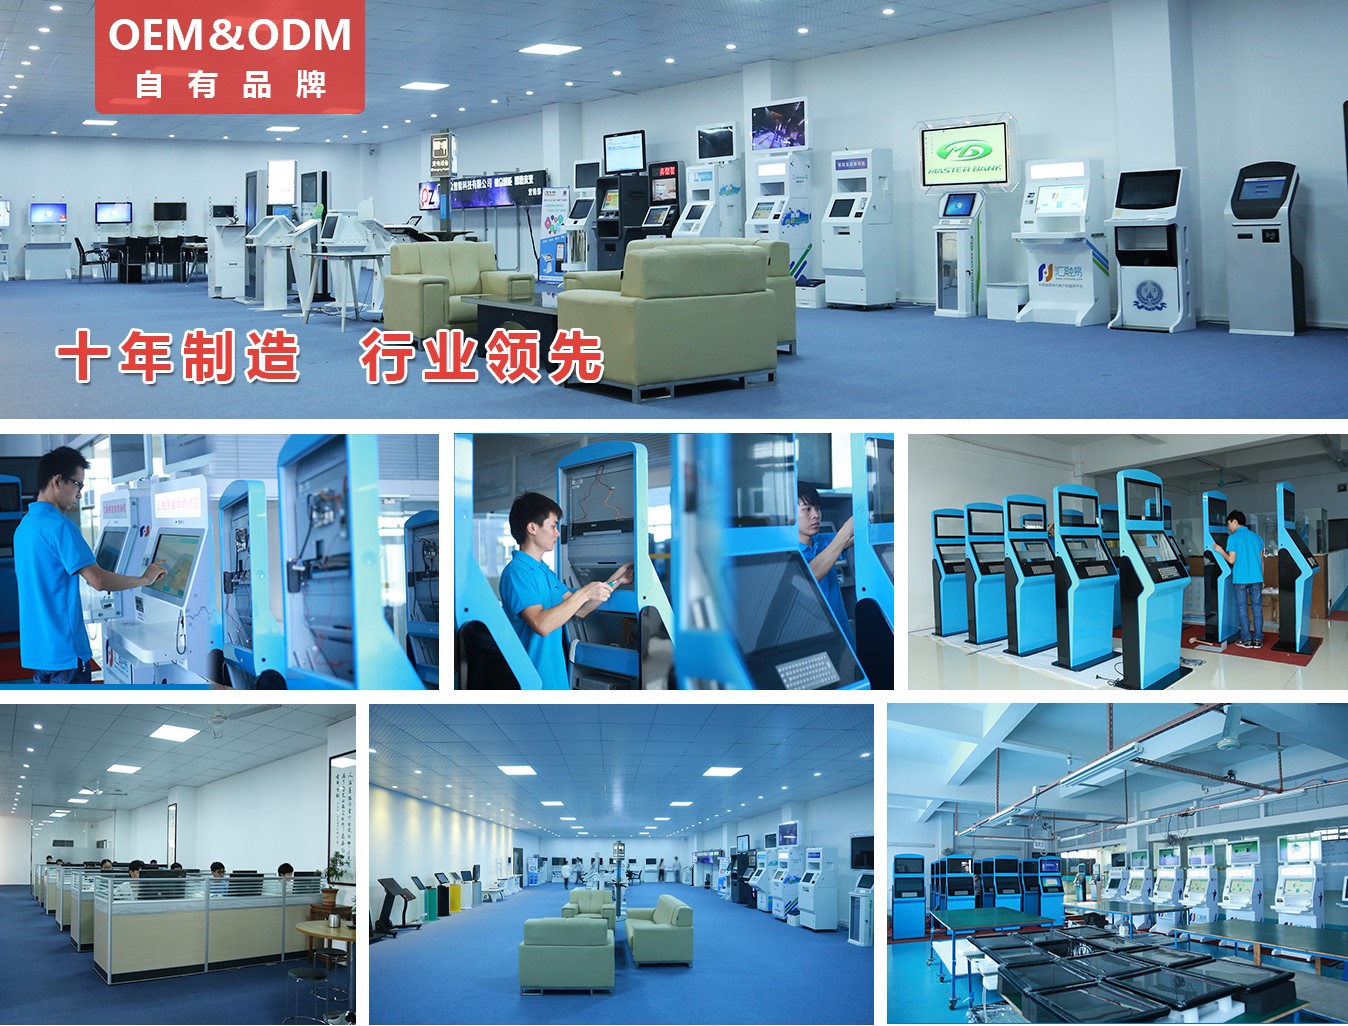 42寸排队叫号机信息看板PZ-42BE--广州磐众智能科技有限公司